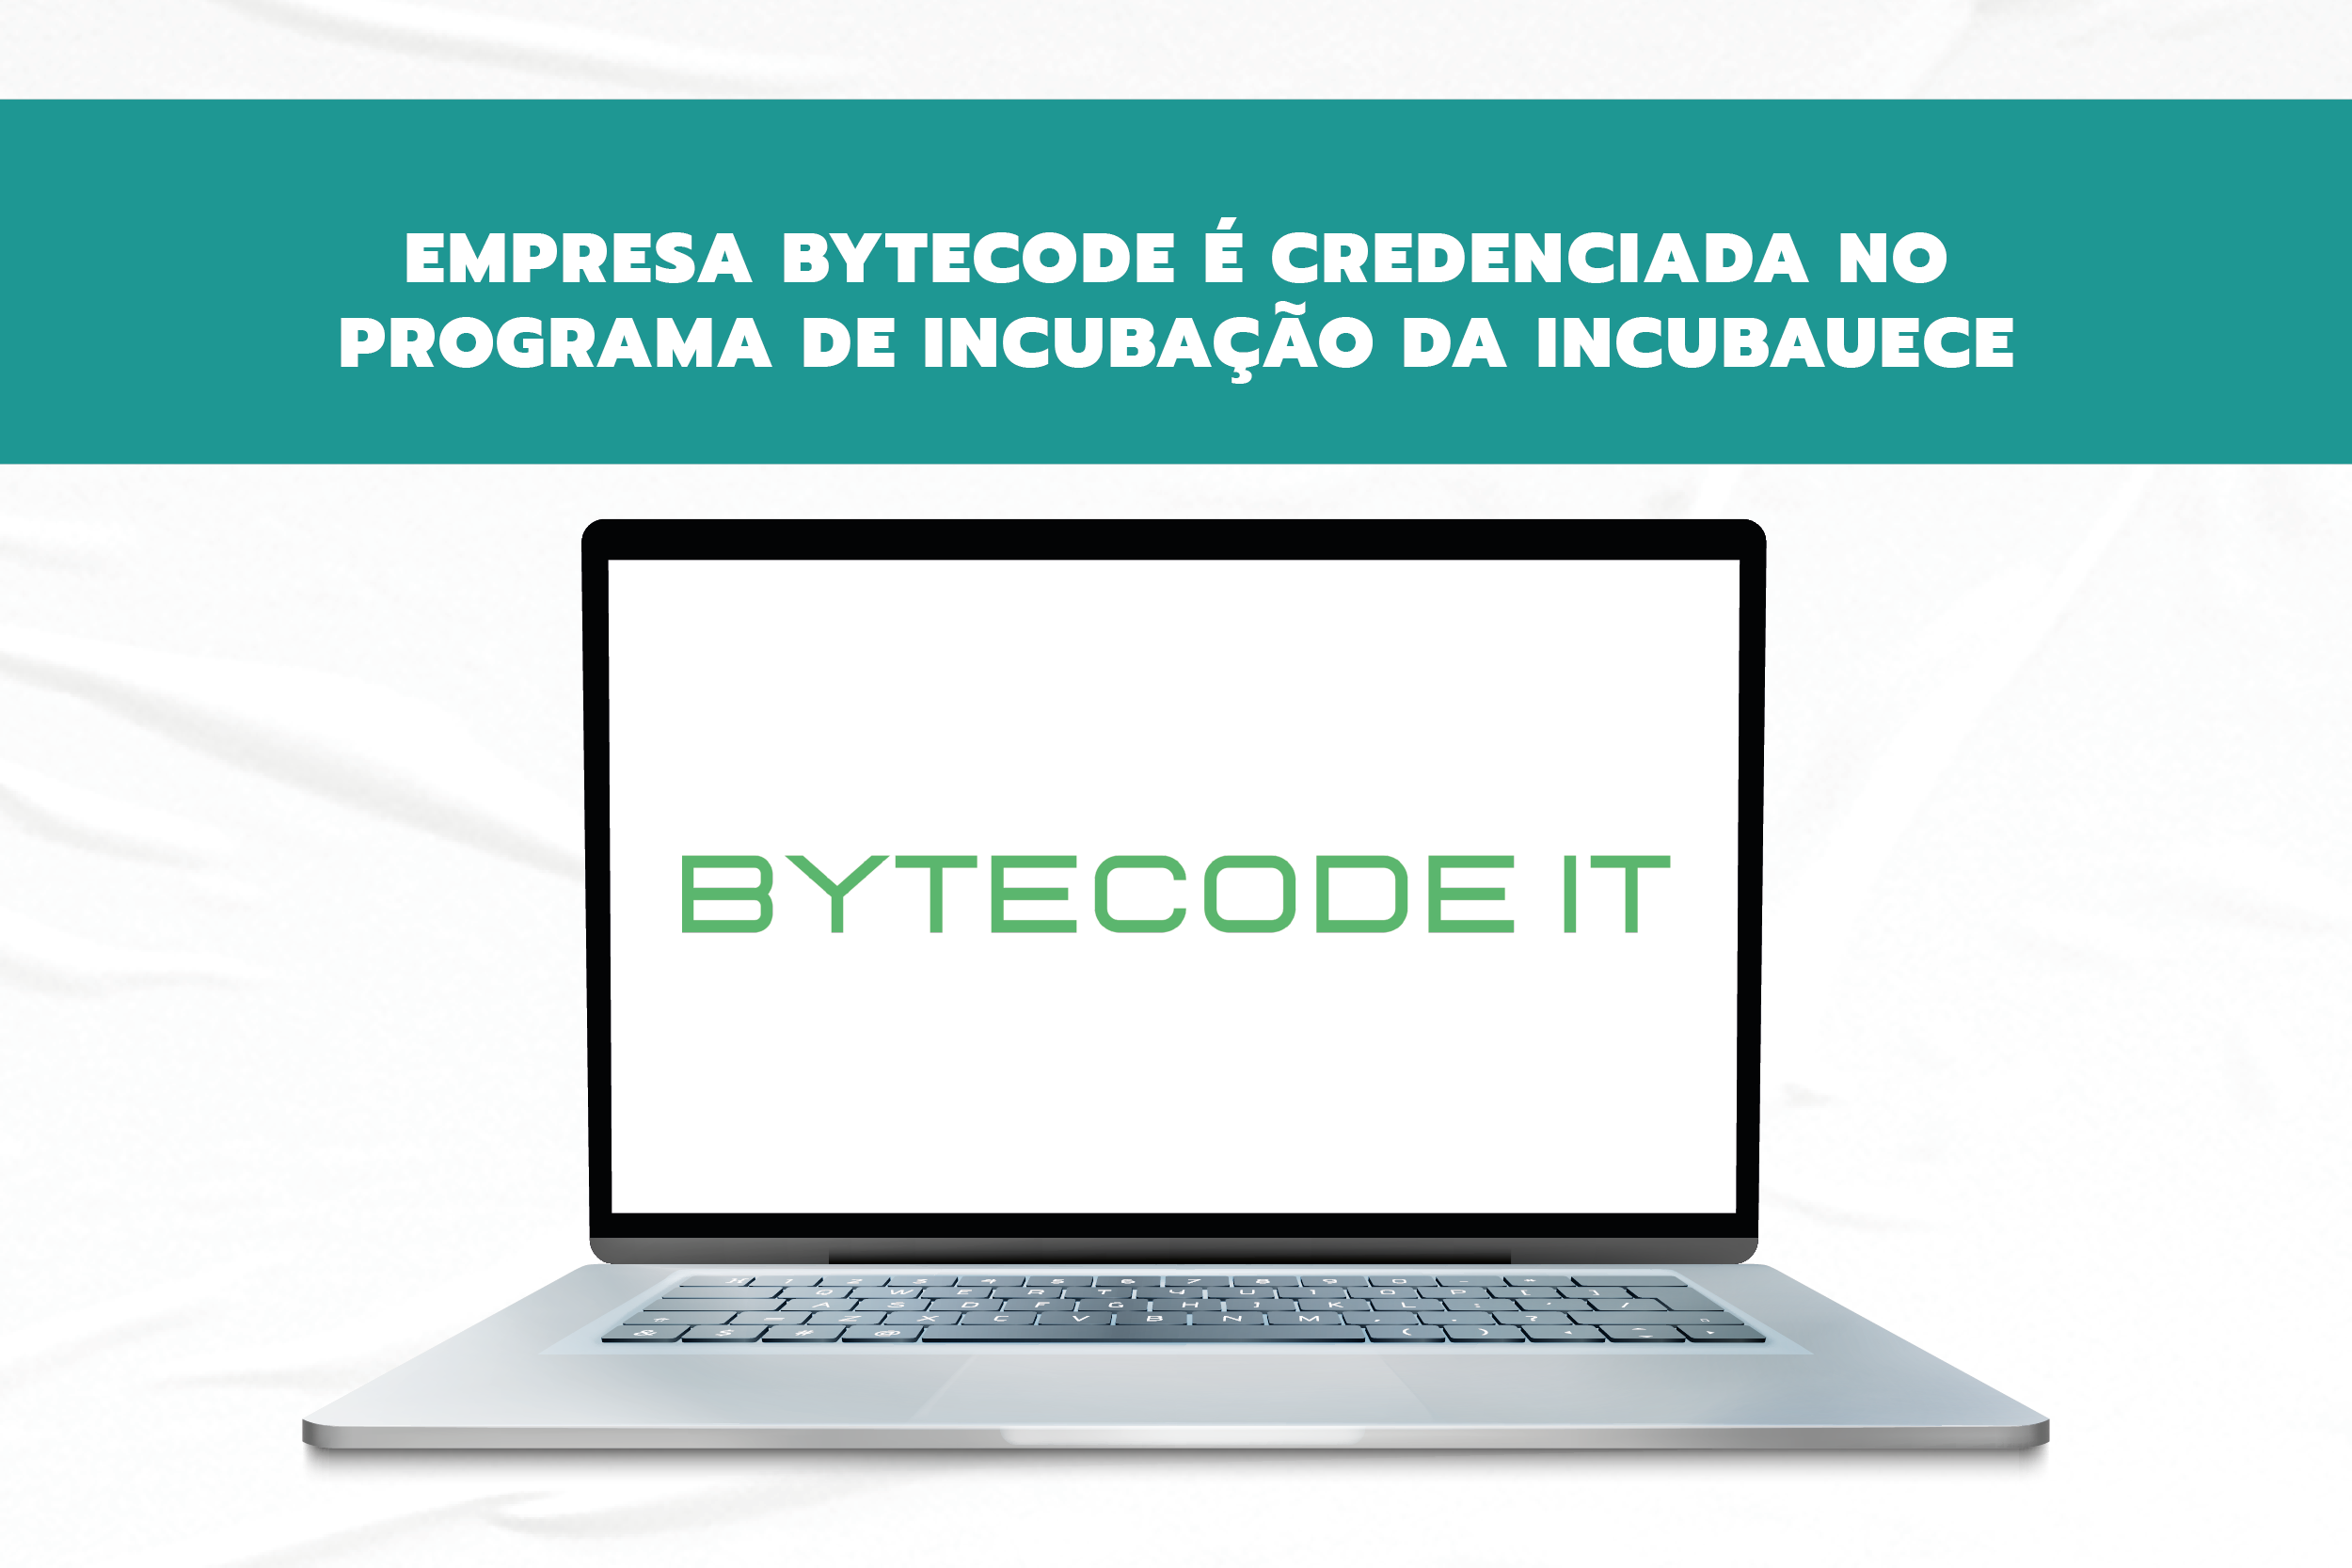 Empresa BYTECODE é credenciada no programa de incubação da Incubauece